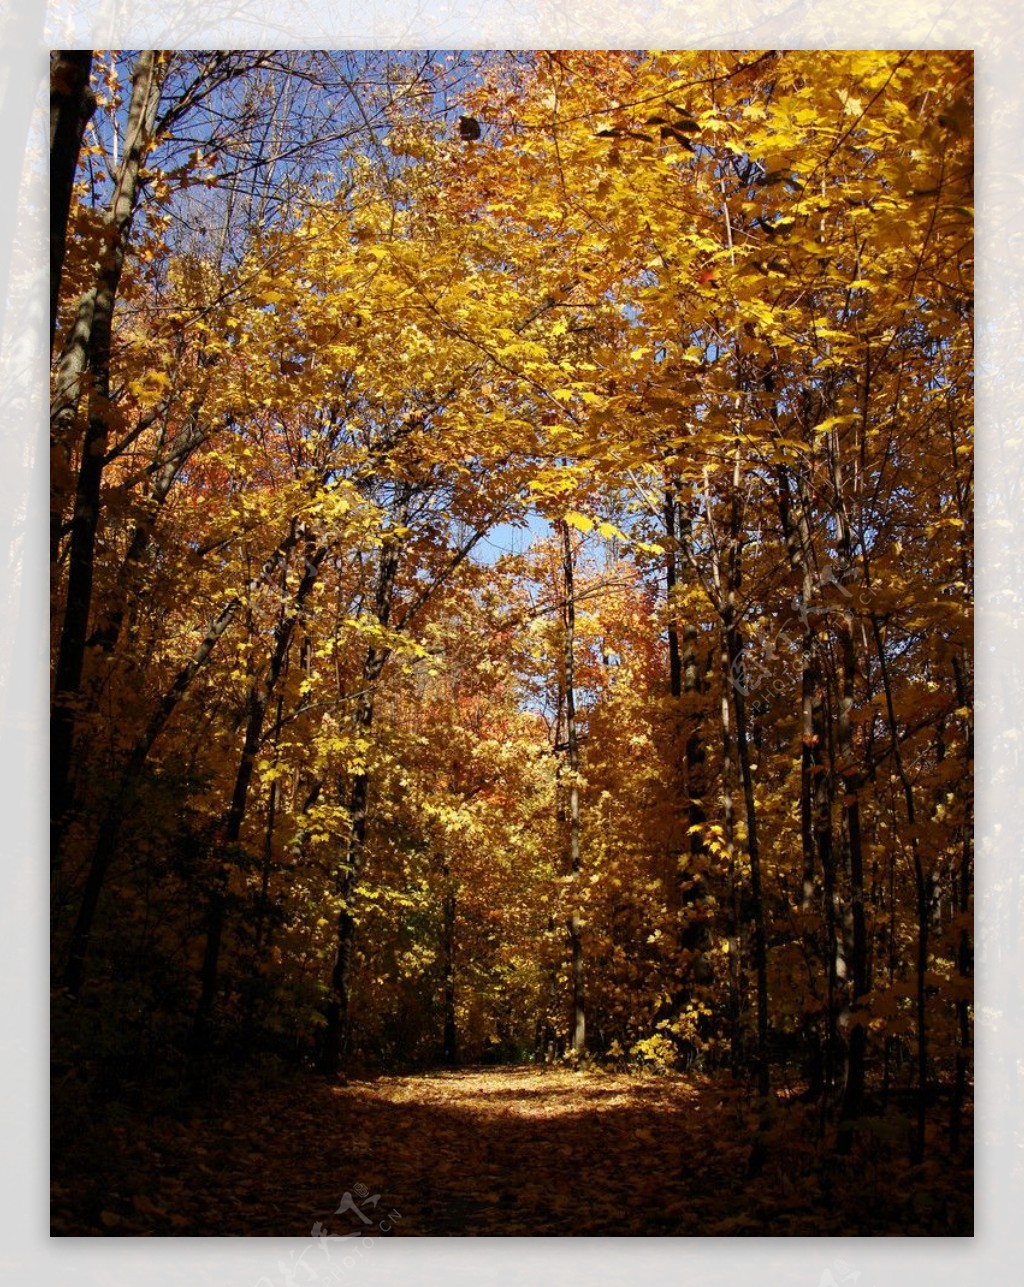 秋季树林图片